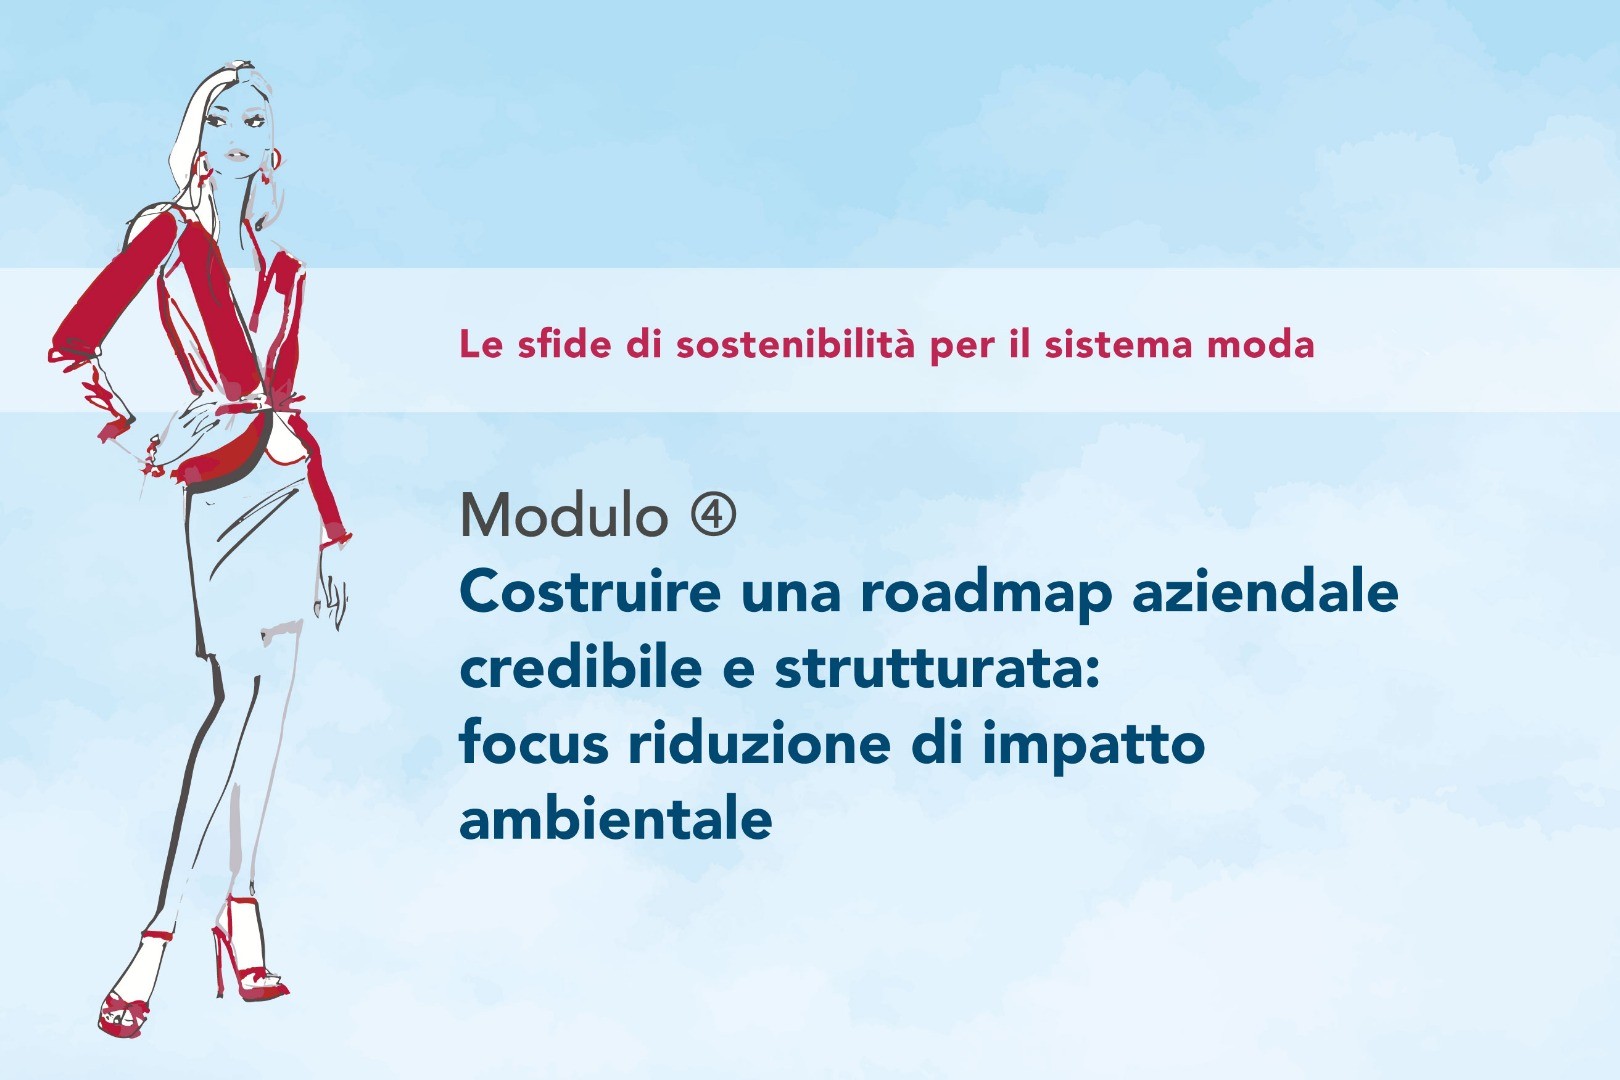 Modulo 4 - Costruire una roadmap aziendale credibile e strutturata: focus Riduzione di Impatto Ambientale